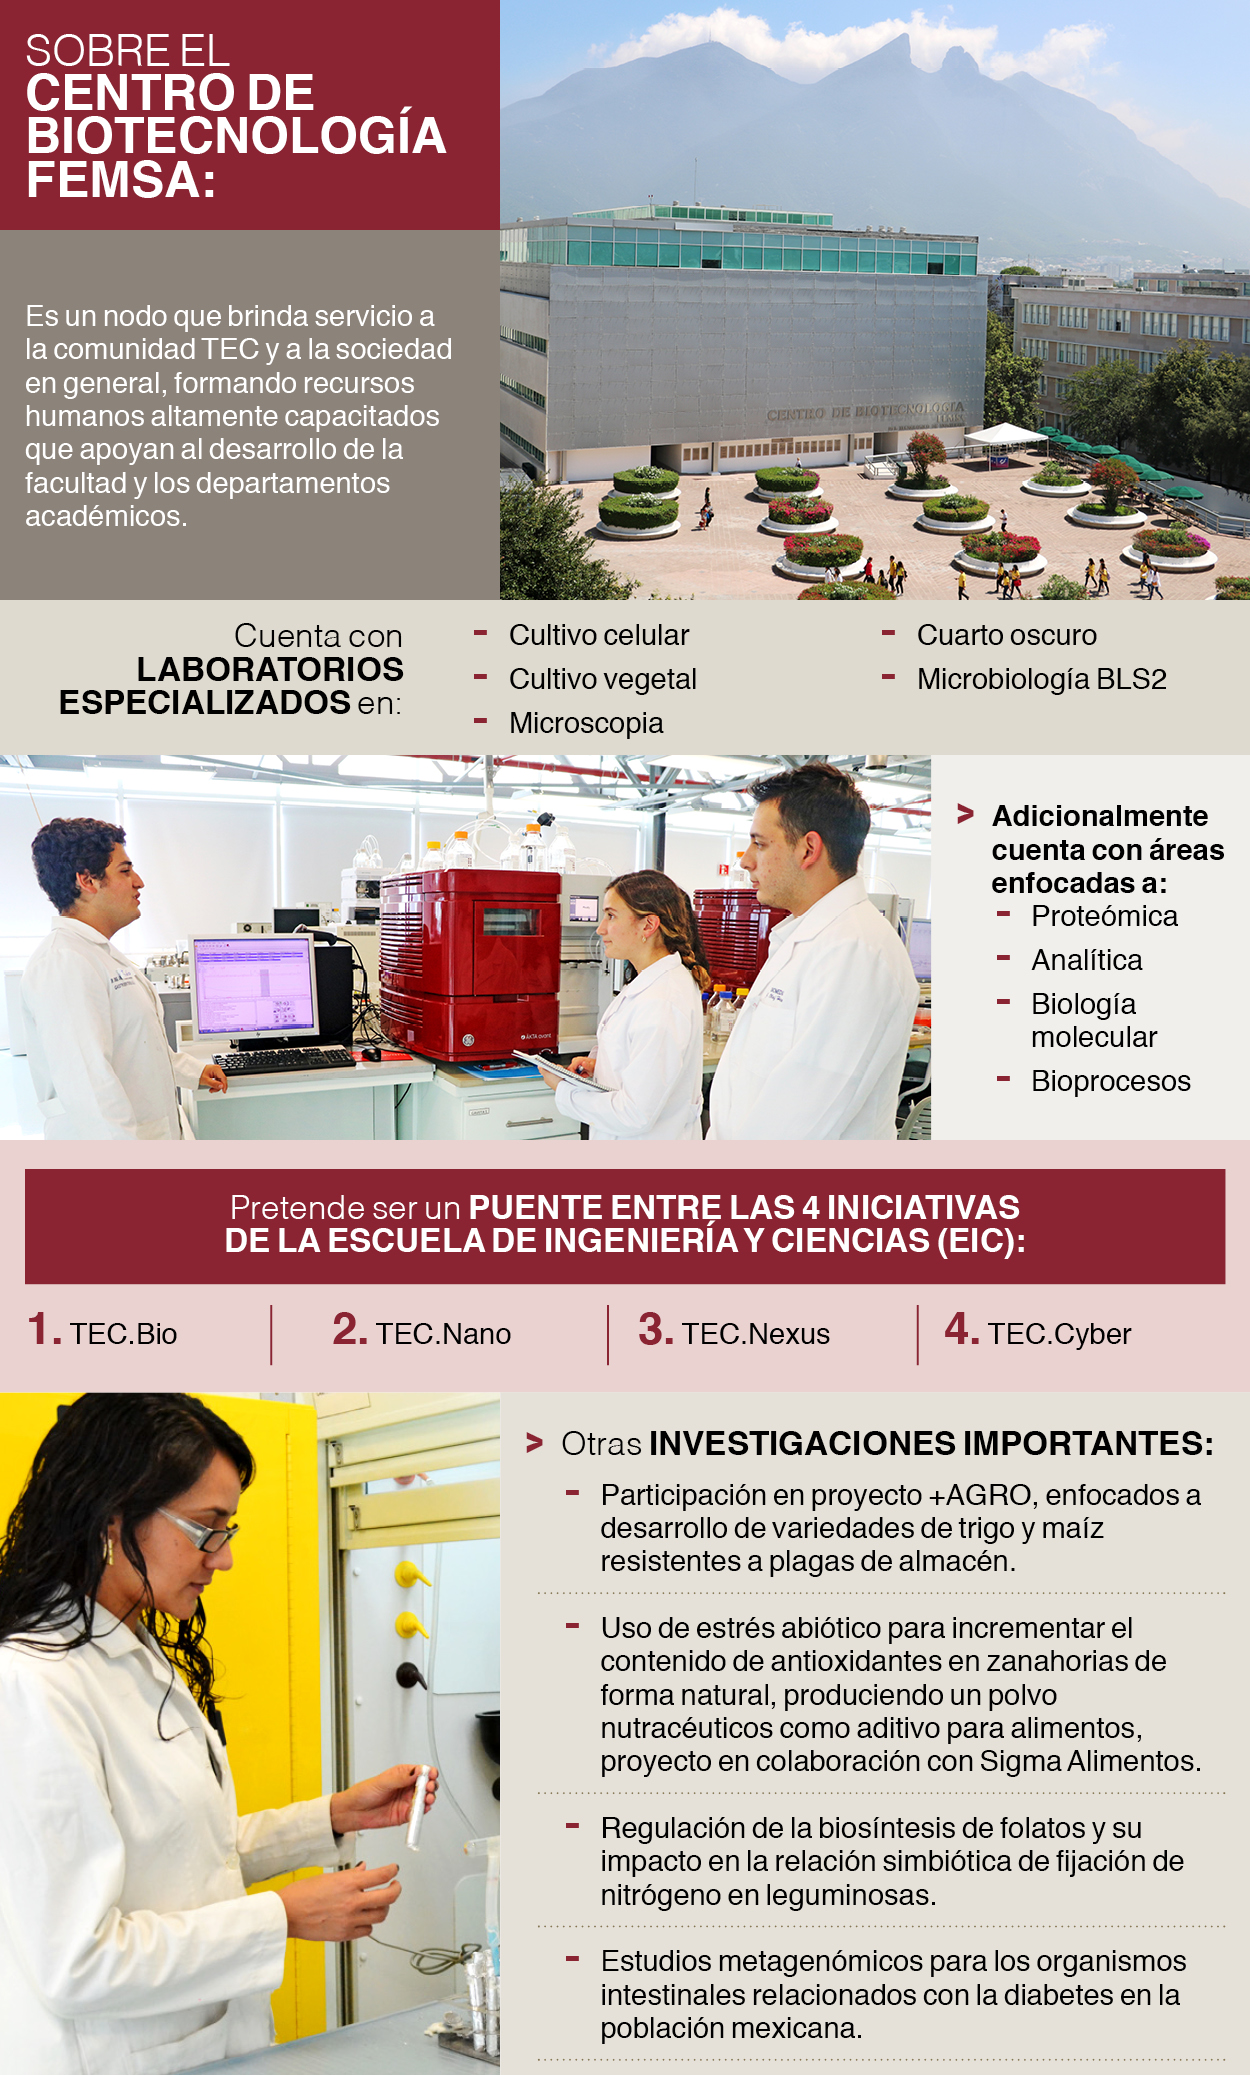 Centro de Biotecnología